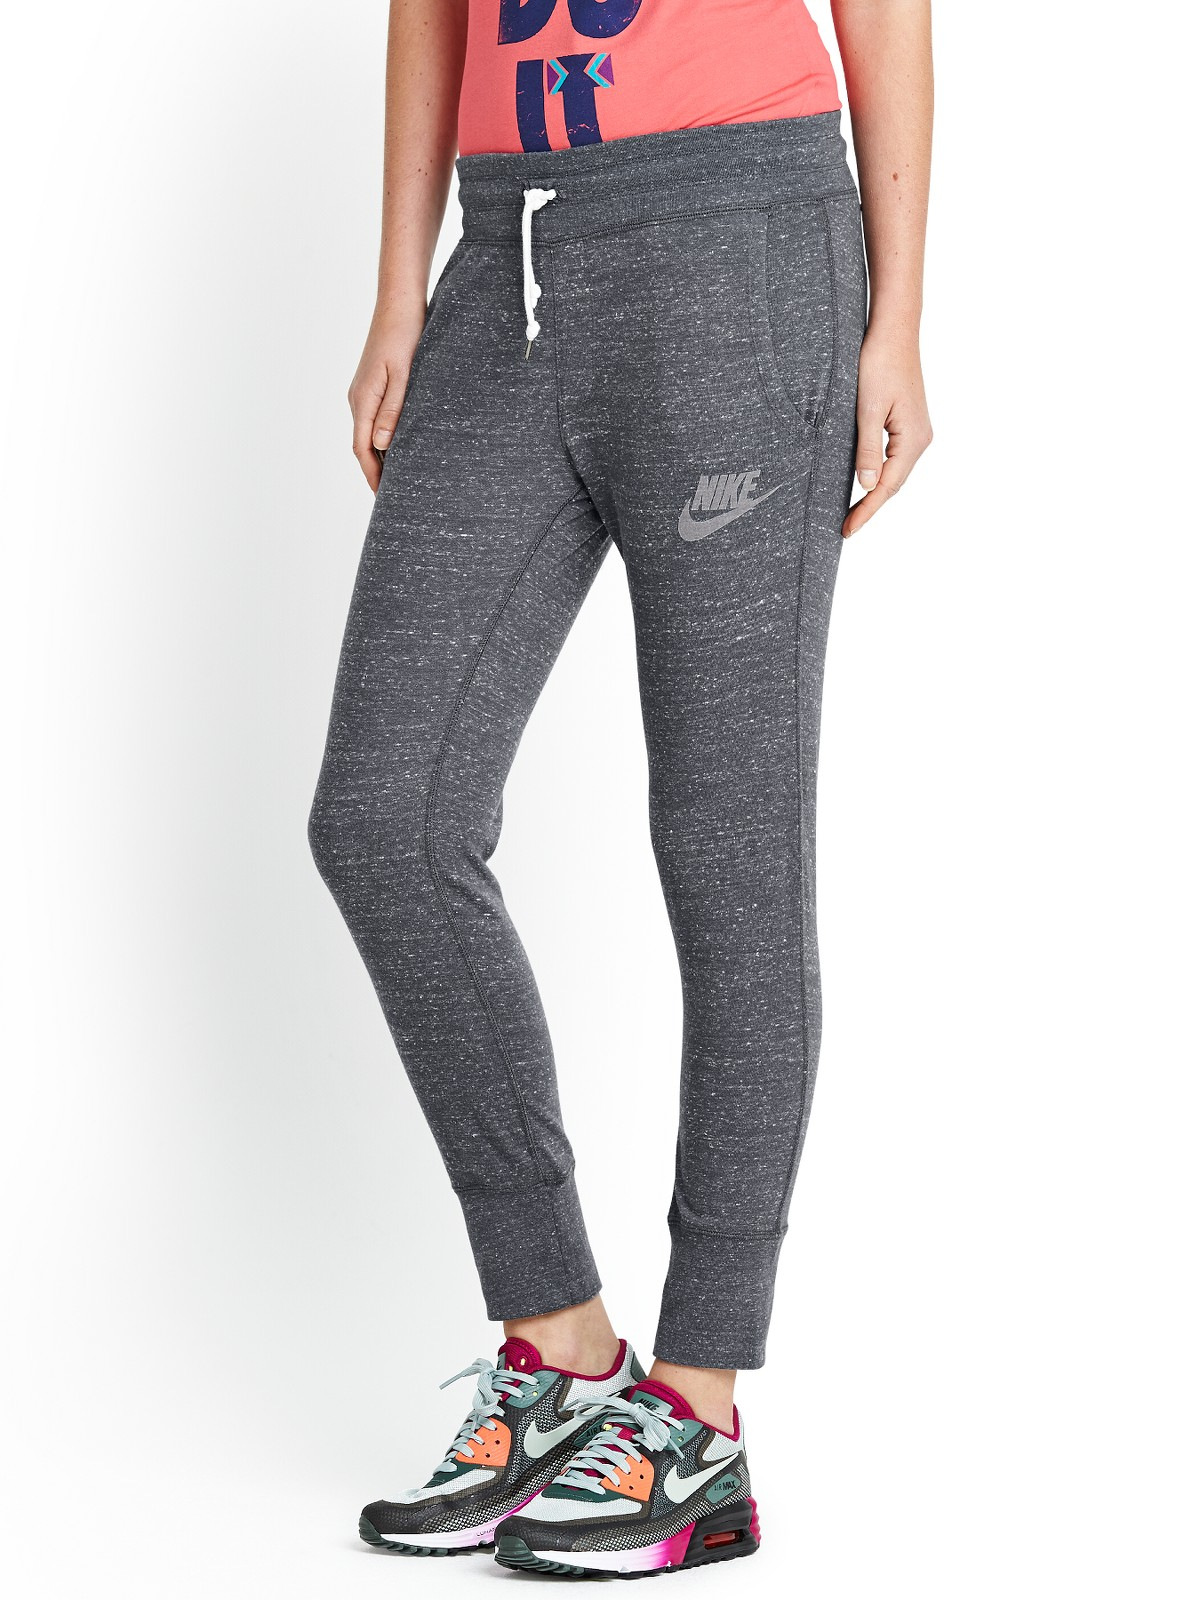 Nike Gym Vintage Capri Pants in Gray (grey) | Lyst